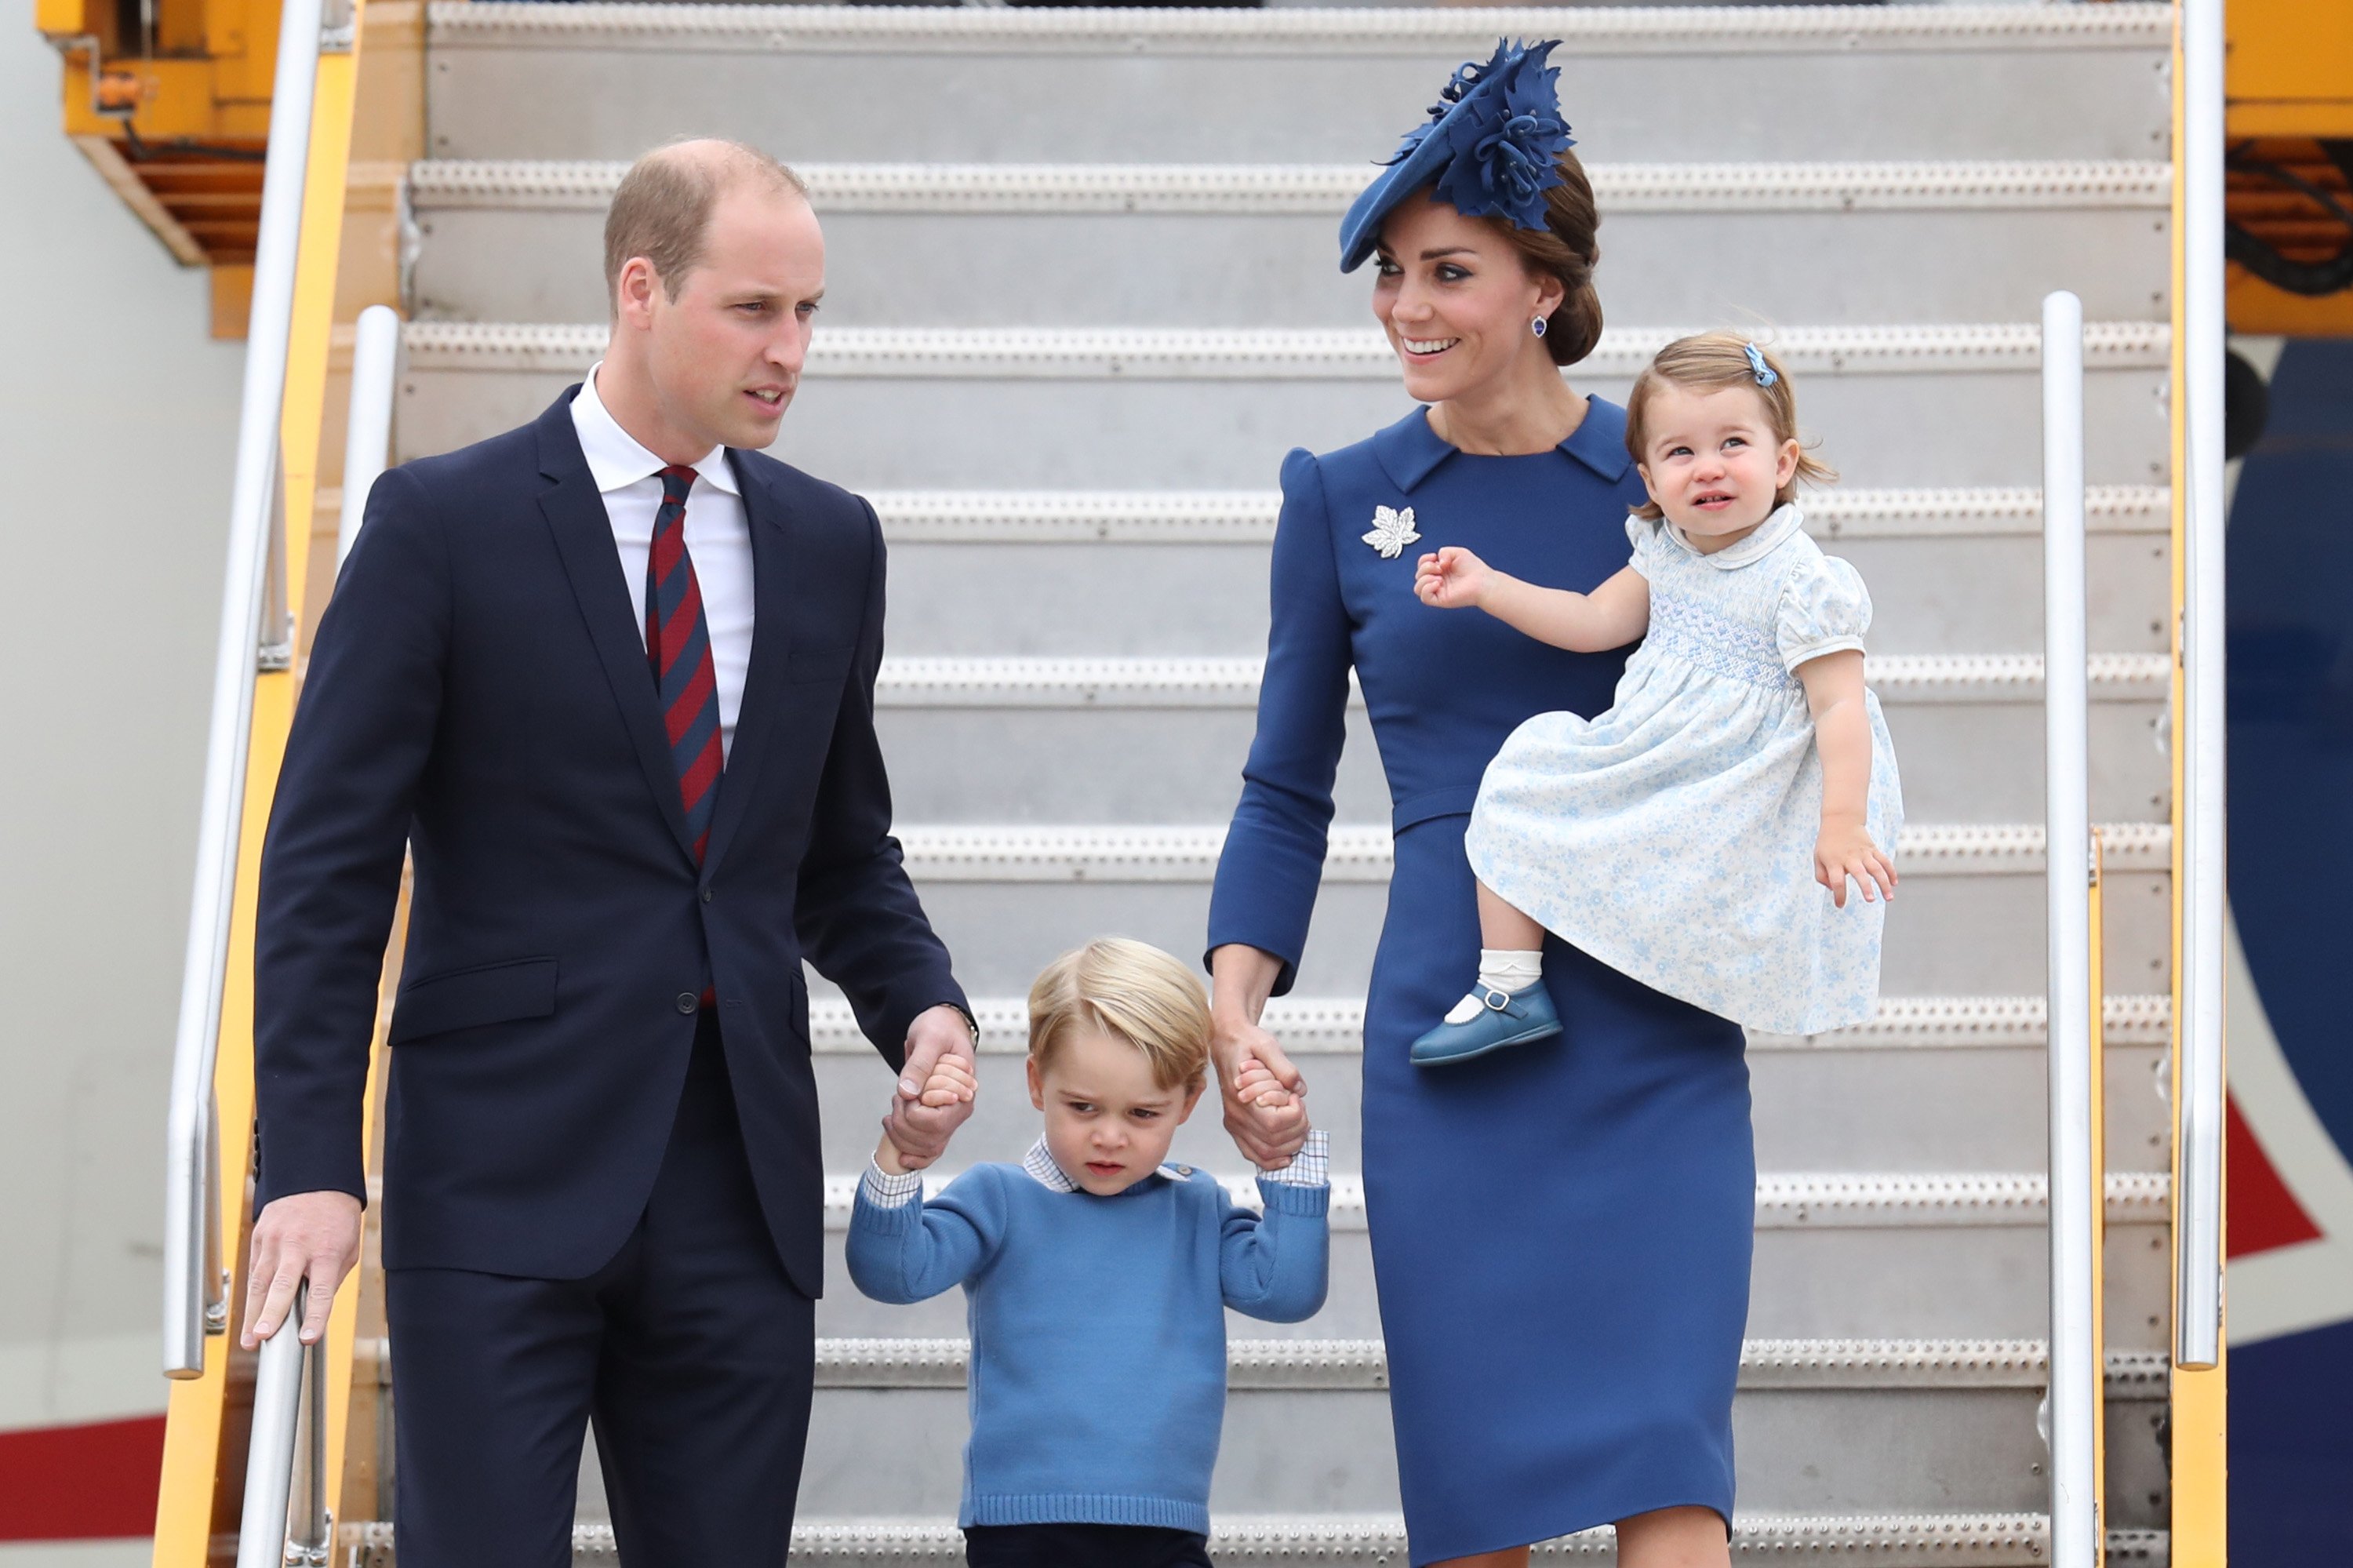 Le prince William, sa femme Kate Middleton et leurs enfants, le prince George et la princesse Charlotte, à l'aéroport de Victoria le 24 septembre 2016 à Victoria, au Canada | Source : Getty Images